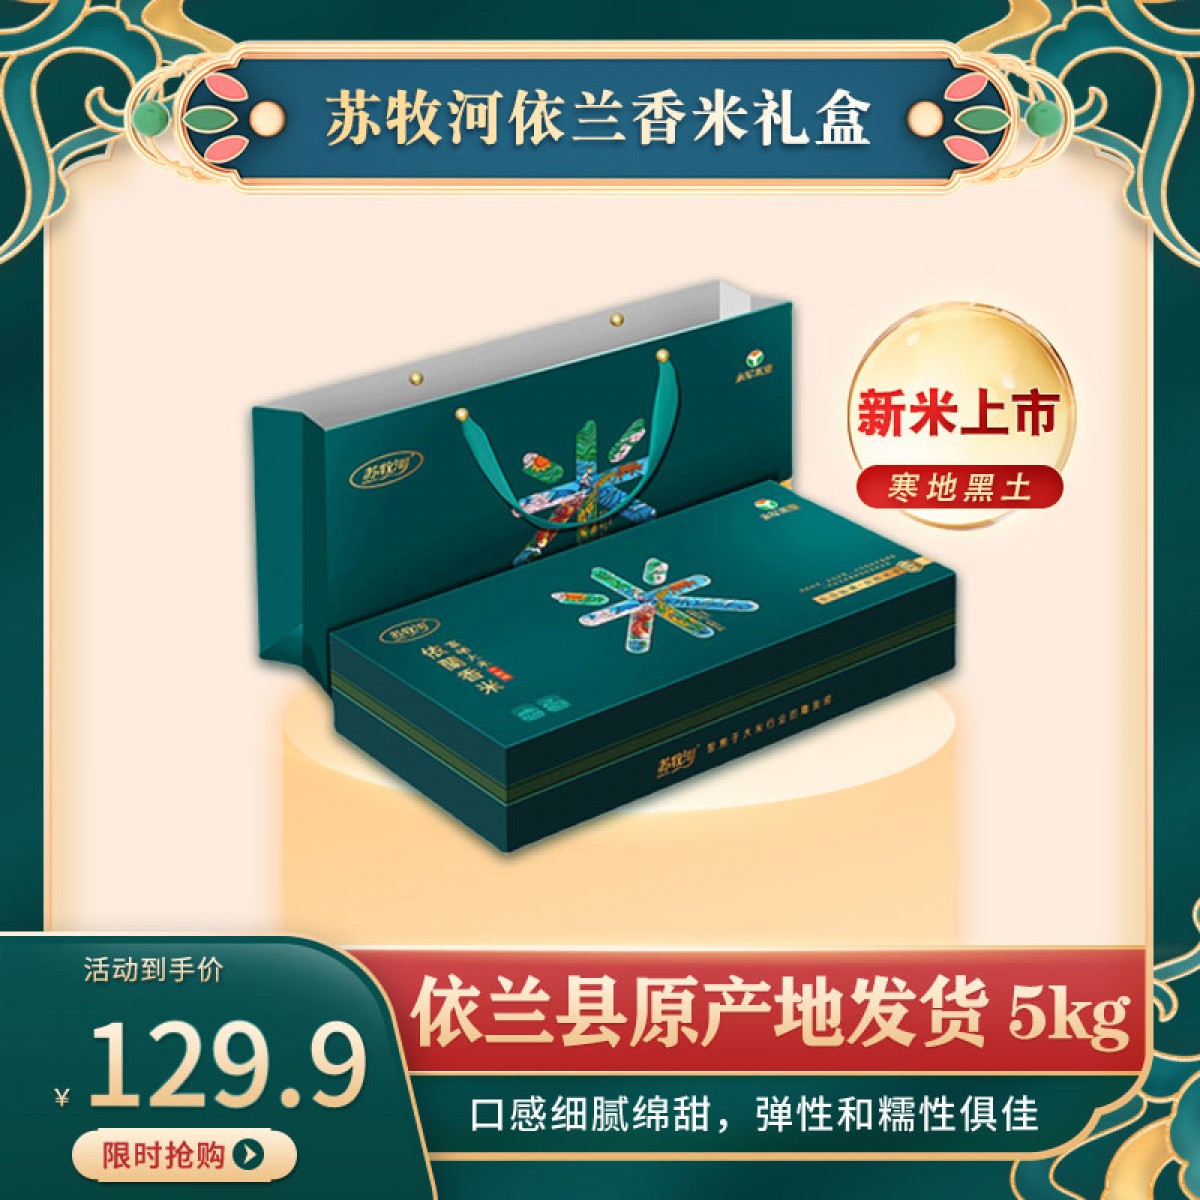 龙江特产 苏牧河依兰香米礼盒 0.5kg*10/盒 颗粒光滑、晶莹剔透 包邮